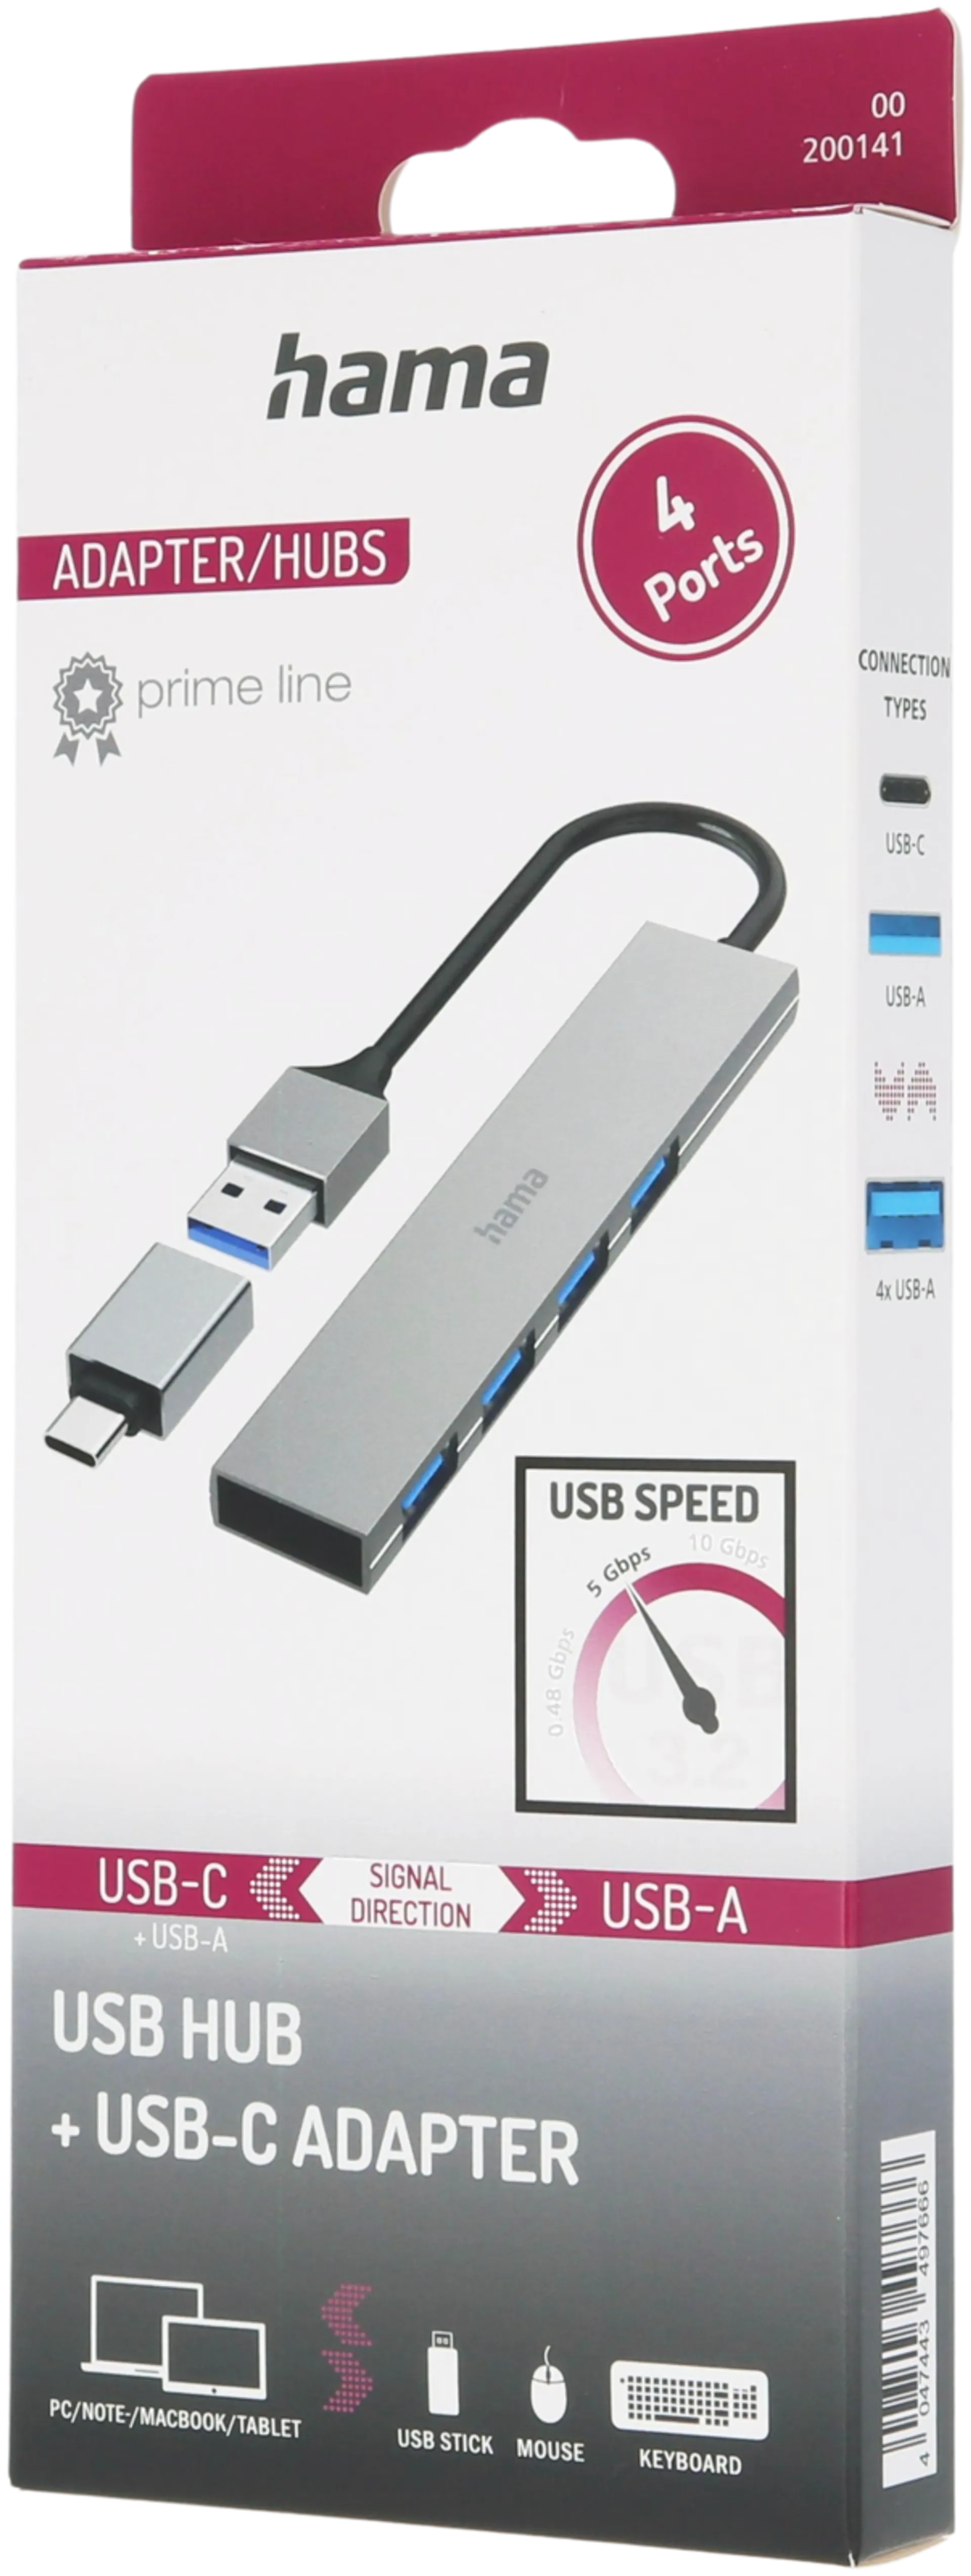 Hama USB-hubi, 4-porttinen, USB-A uros, USB-C adapteri, 4 x USB-A, USB 3.2 Gen 1, 5 Gbit/s, Ultra-slim, 0,15 m - 6